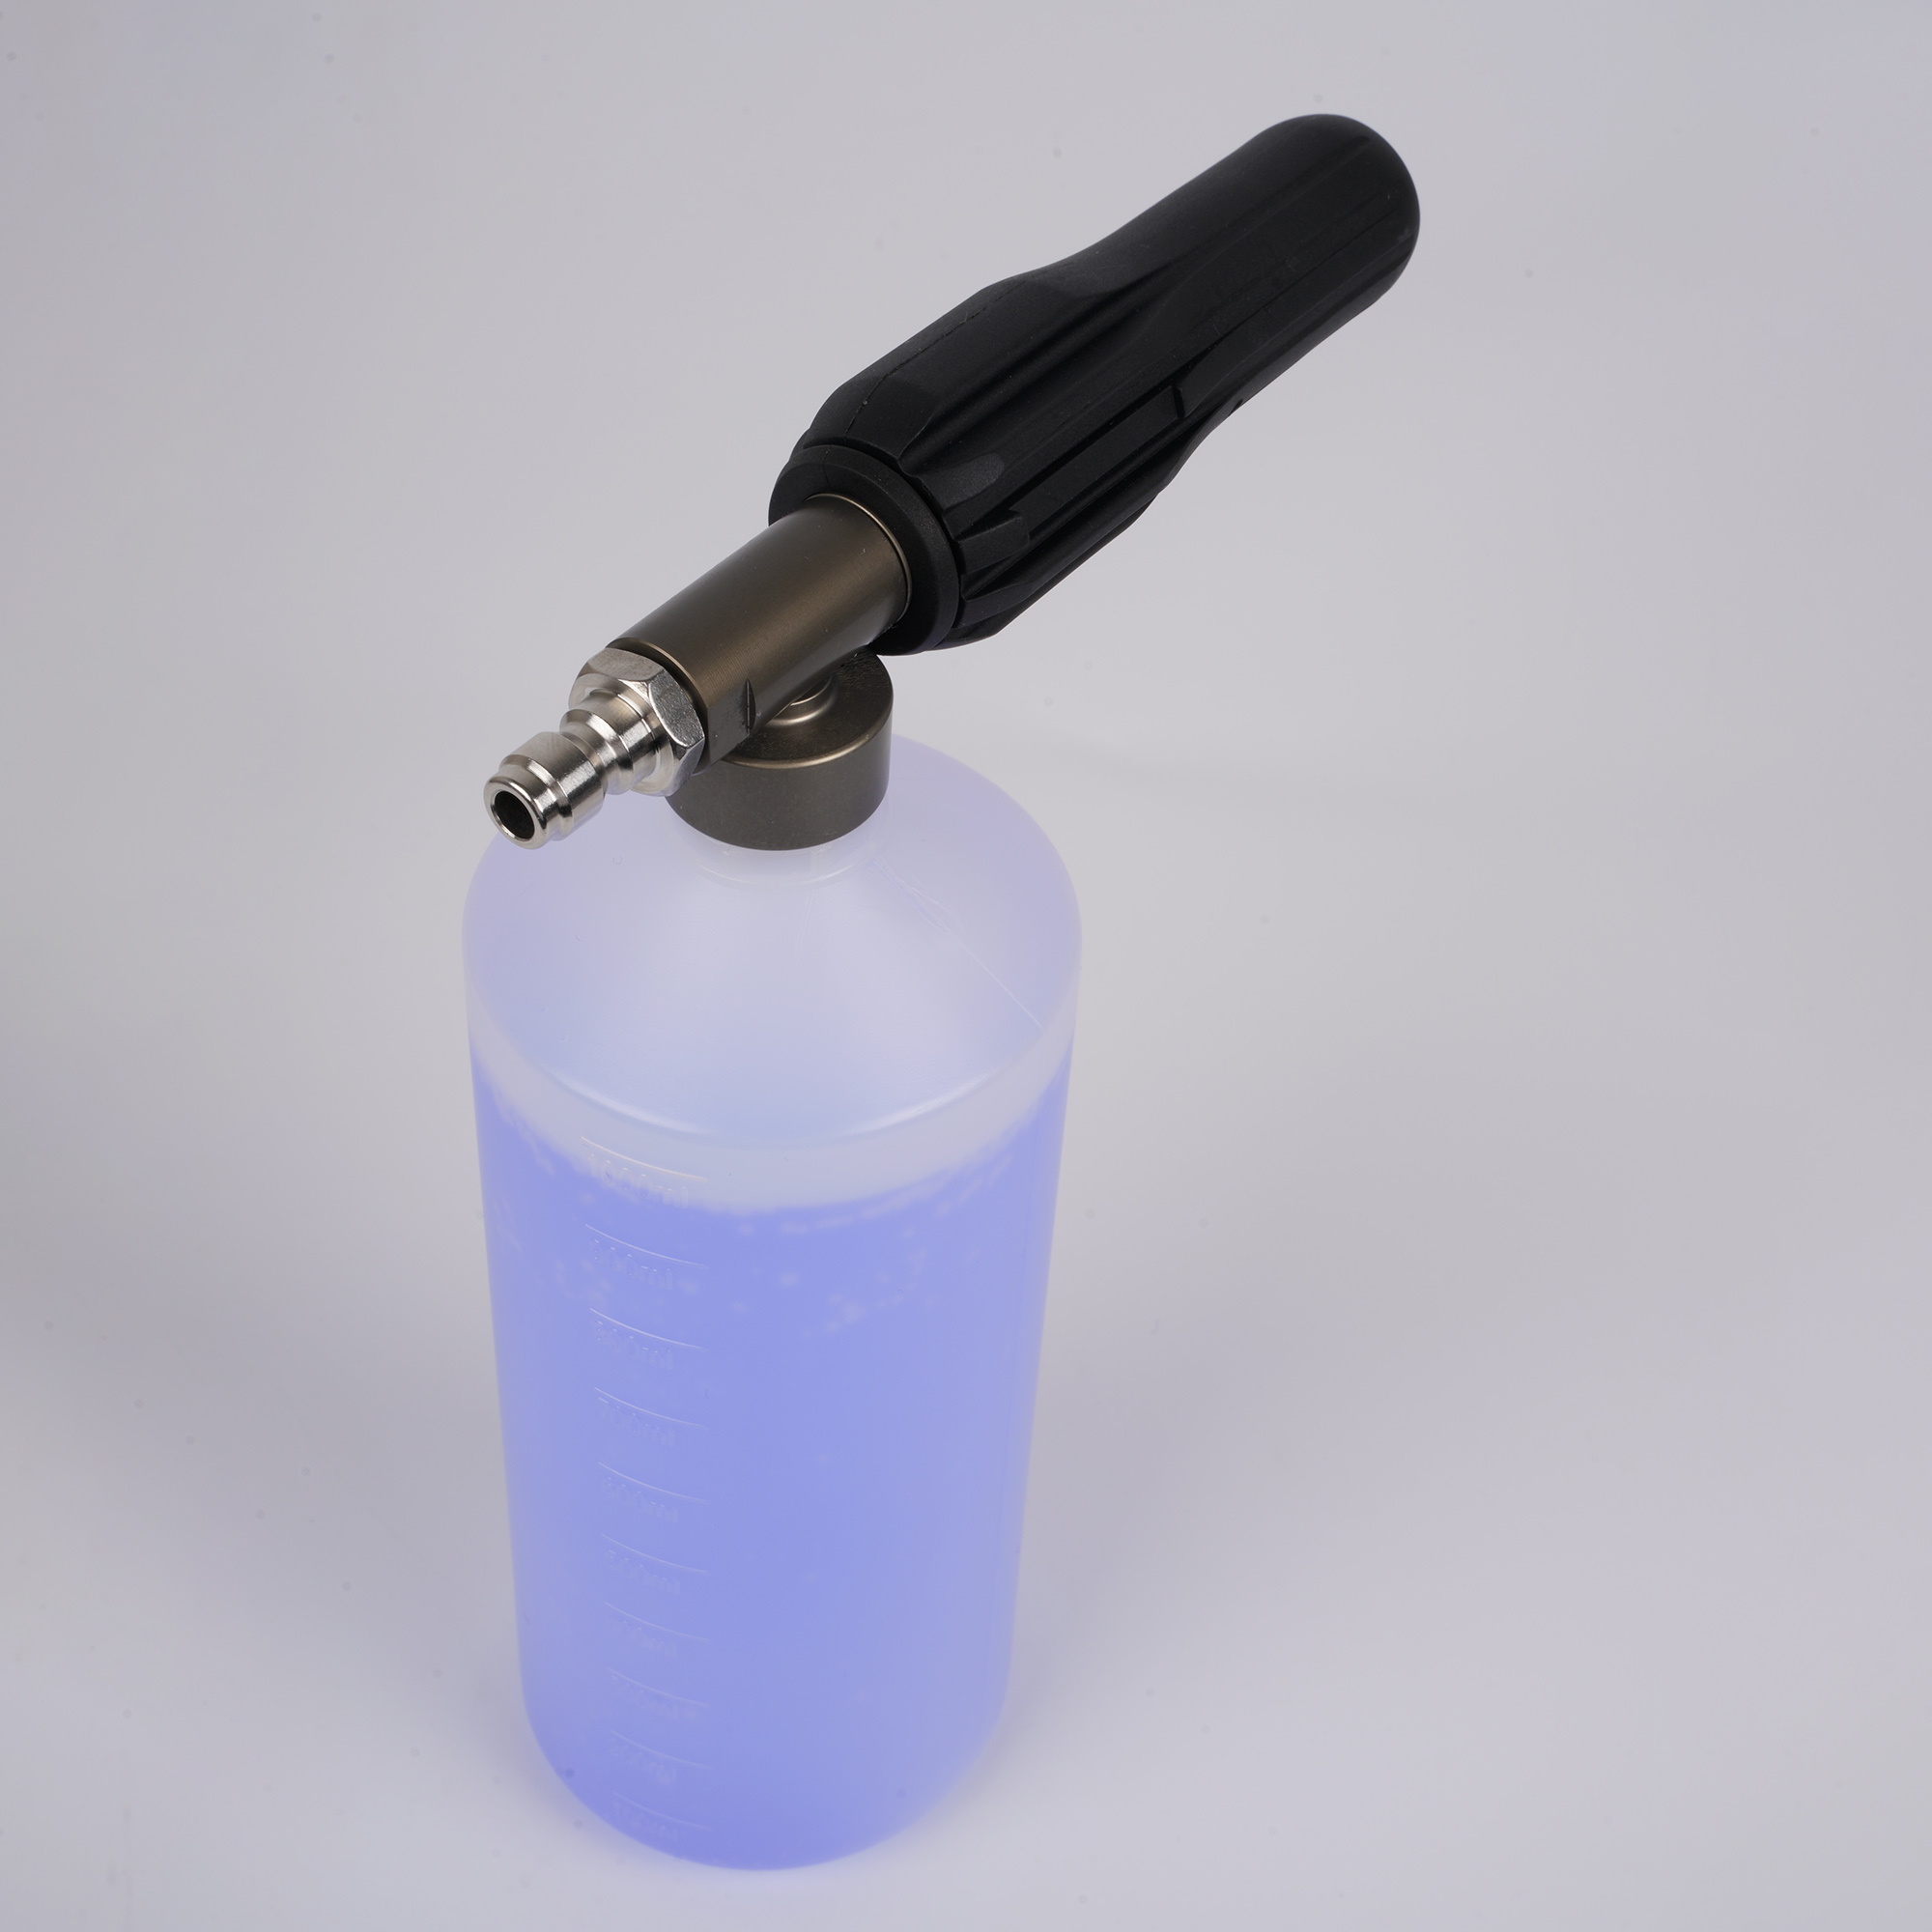 Verstellbare Schaumkanone 1 Liter Flaschen Schneeschaum Lanze mit 1/4 "Schnellanschluss für die Druckwaschpistole